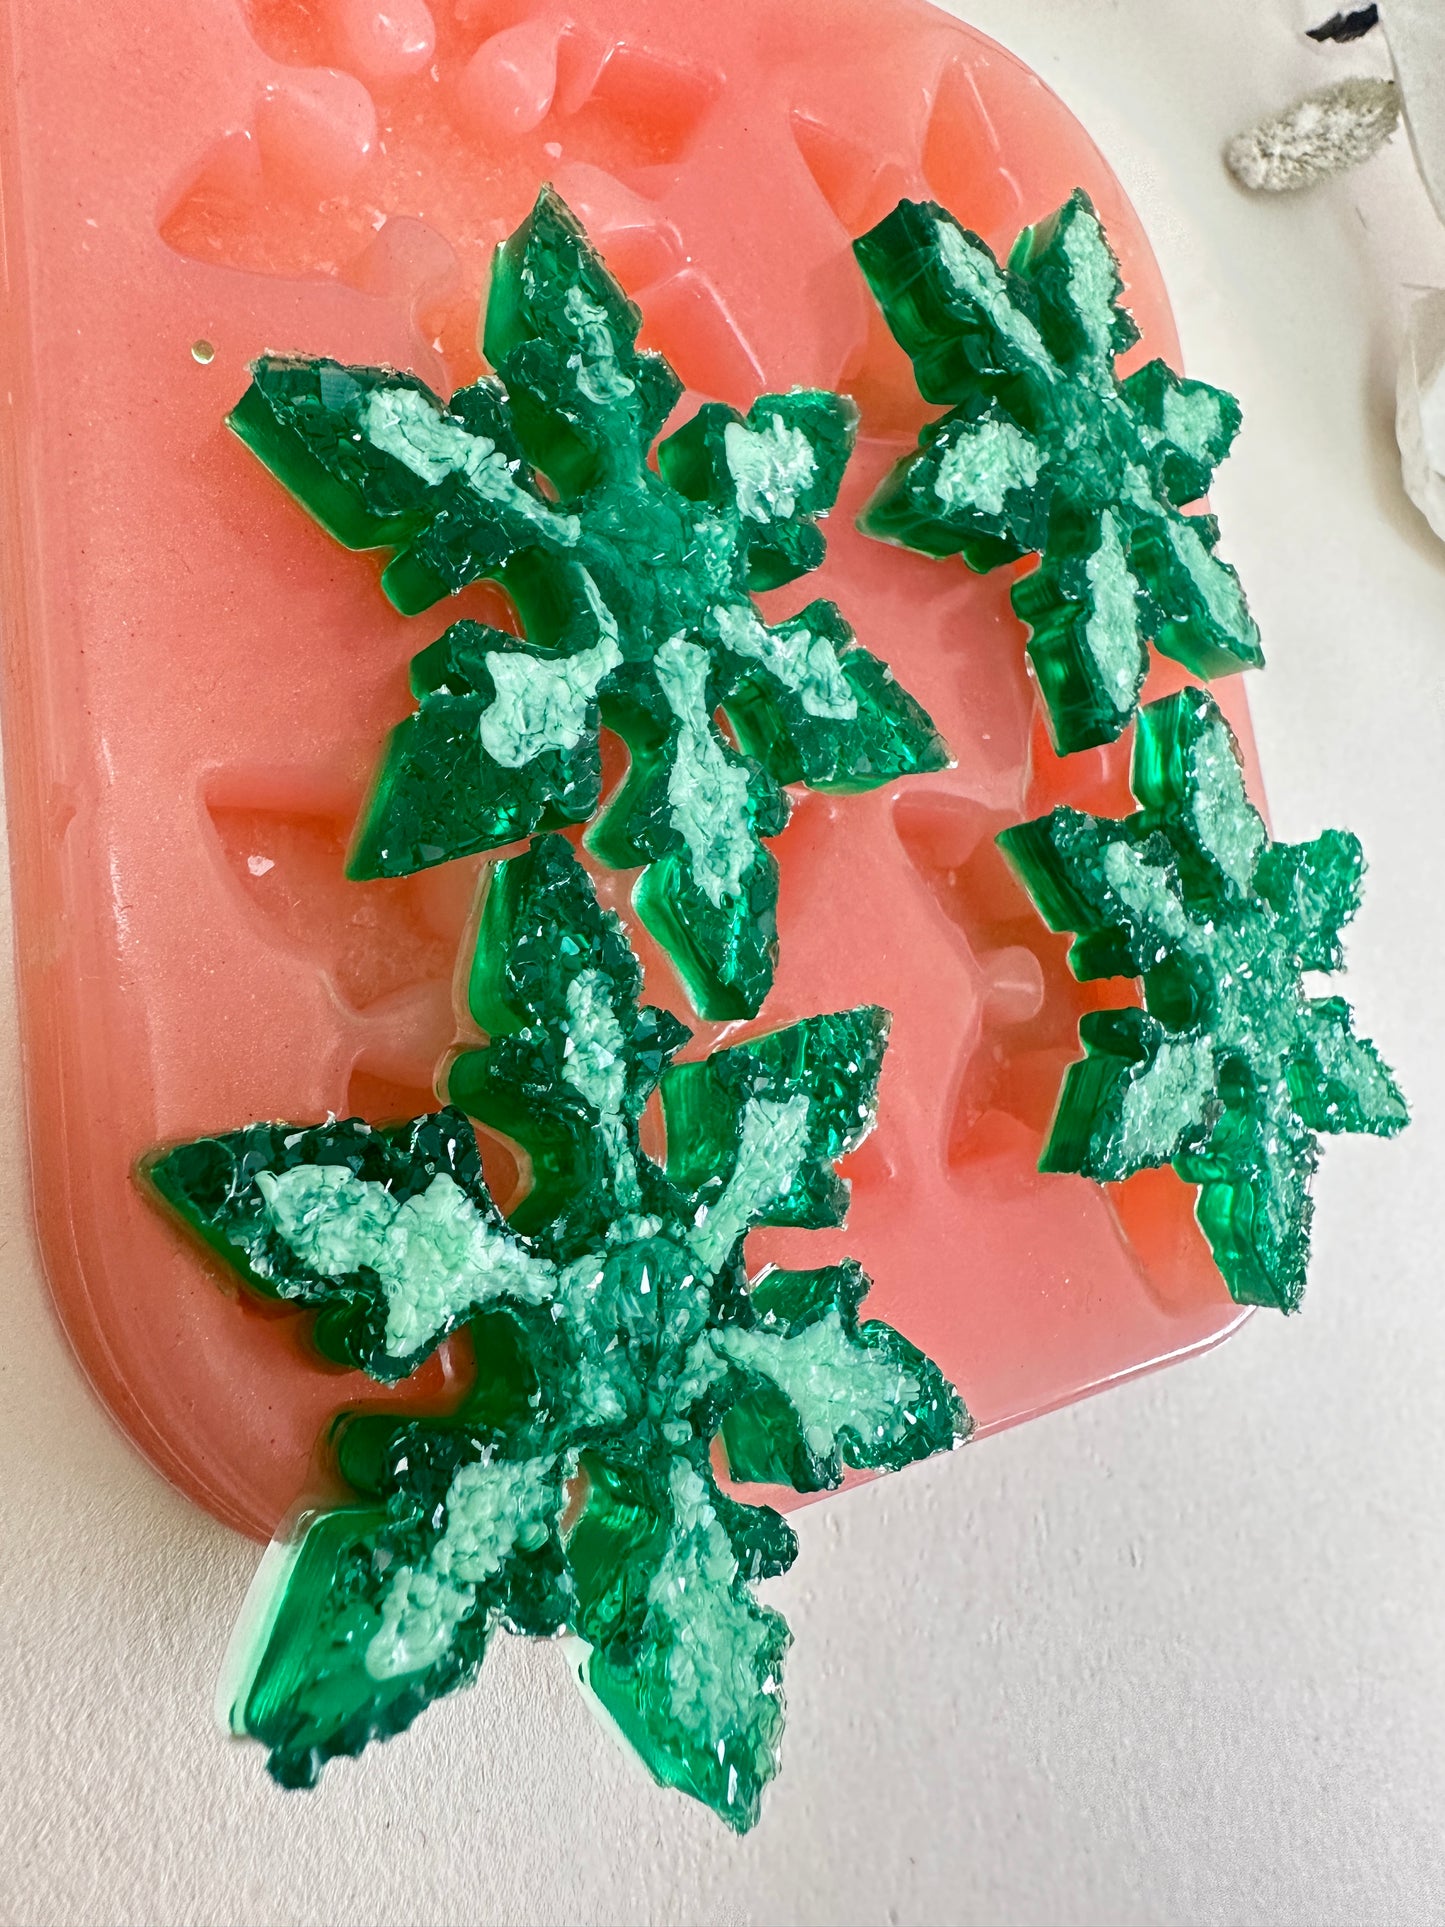 Набор силиконовых форм для снежинок с кристаллами для смолы — подробные формы на зимнюю тематику для поделок своими руками — идеальный подарок для мастеров